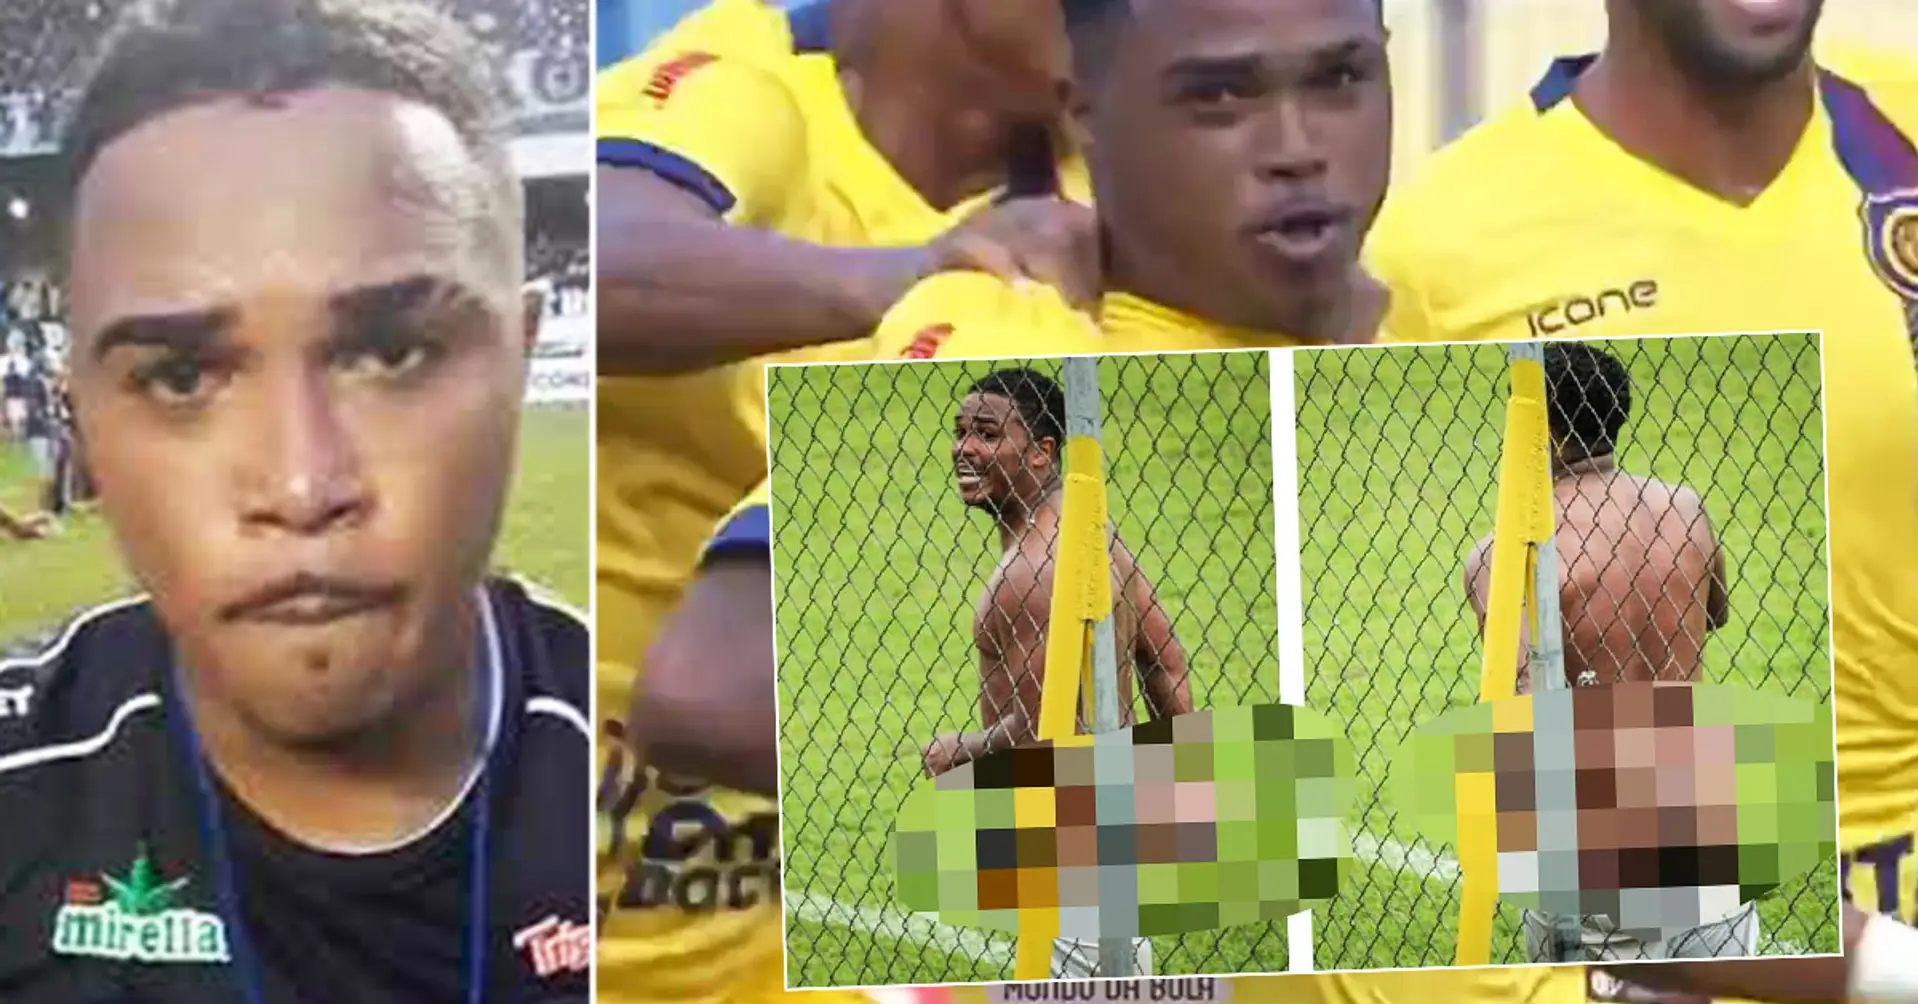 Brasilianischer Spieler winkt Gegner mit Genitalien, verblüfft Fans mit nacktem Hintern und erhält acht Spiele Sperre